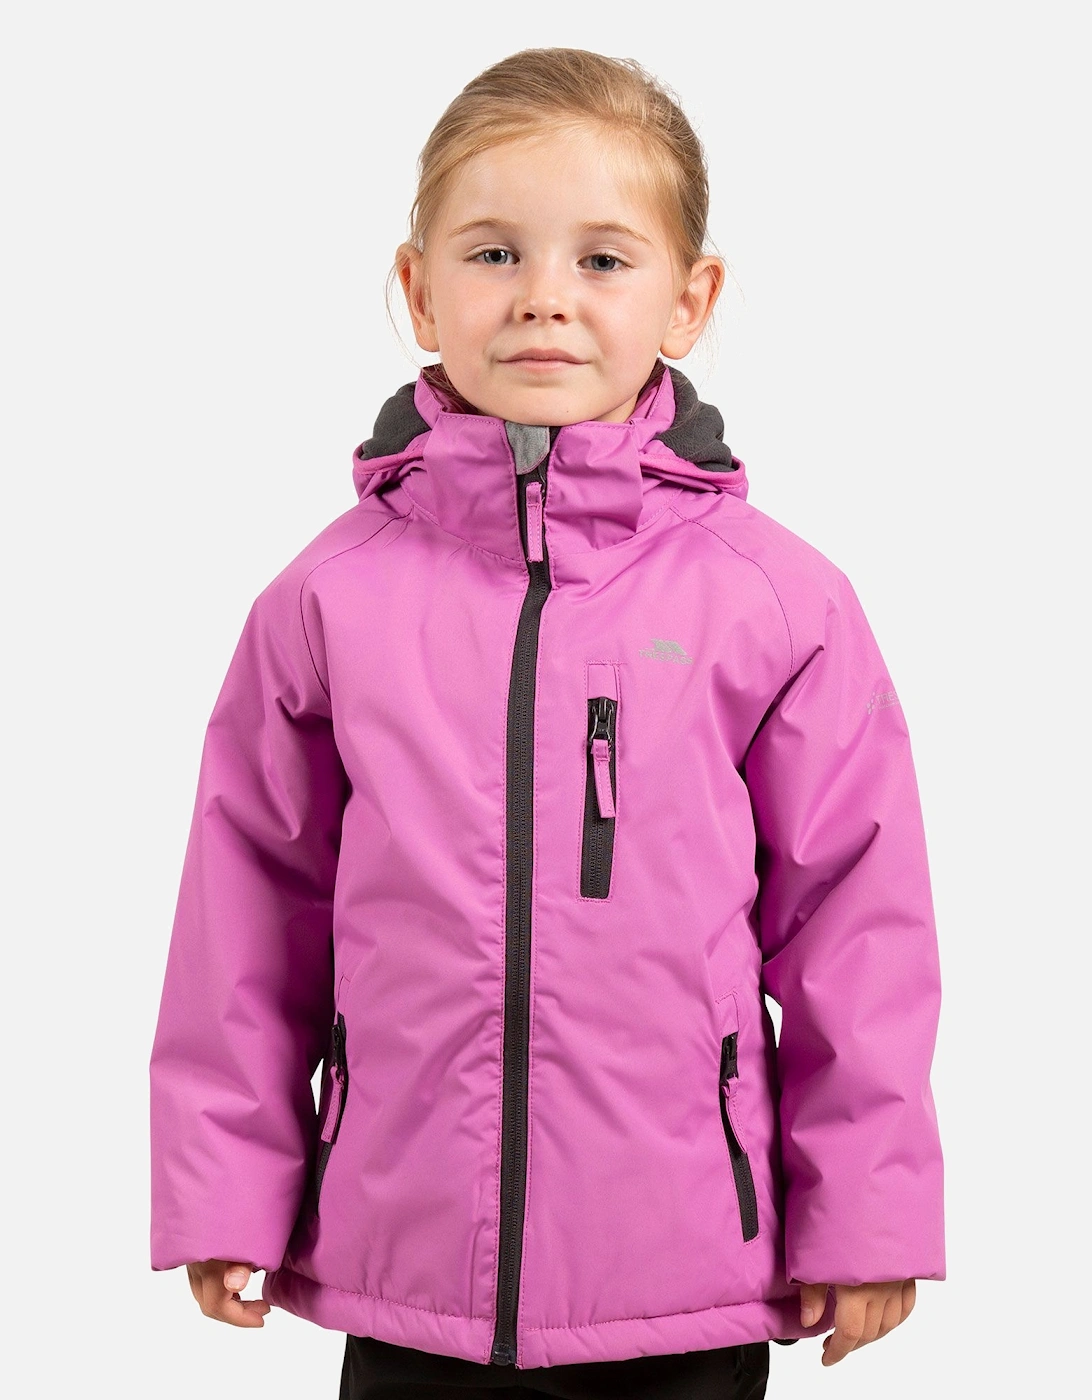 Childrens Girls Shasta Waterproof Jacket